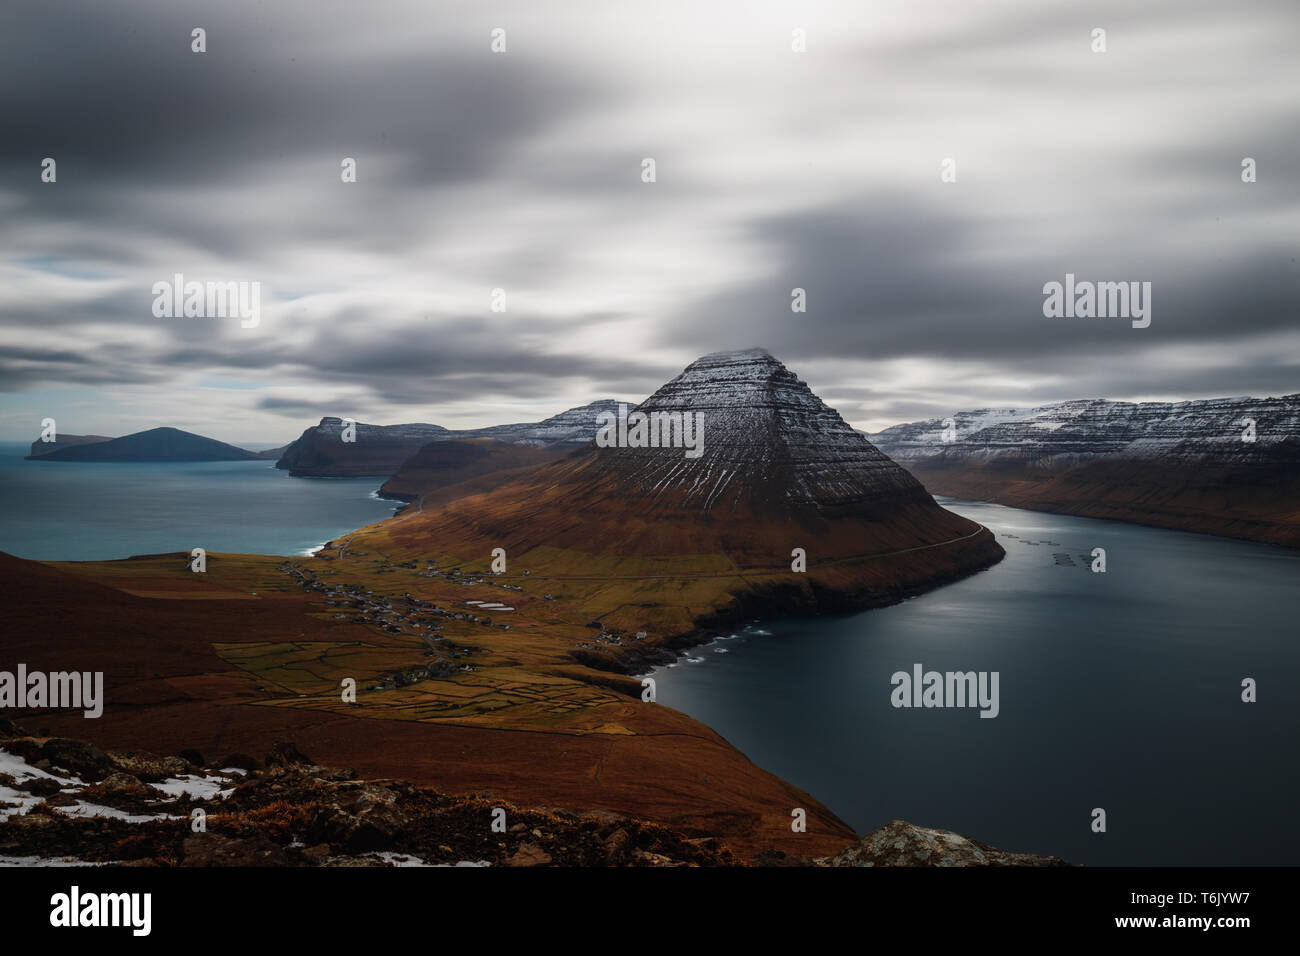 L'exposition longue vue panoramique à partir de la Kap Enniberg vers le village Viðareiði, son fjord avec des montagnes neige-couvertes (îles Féroé, Danemark, Europe) Banque D'Images